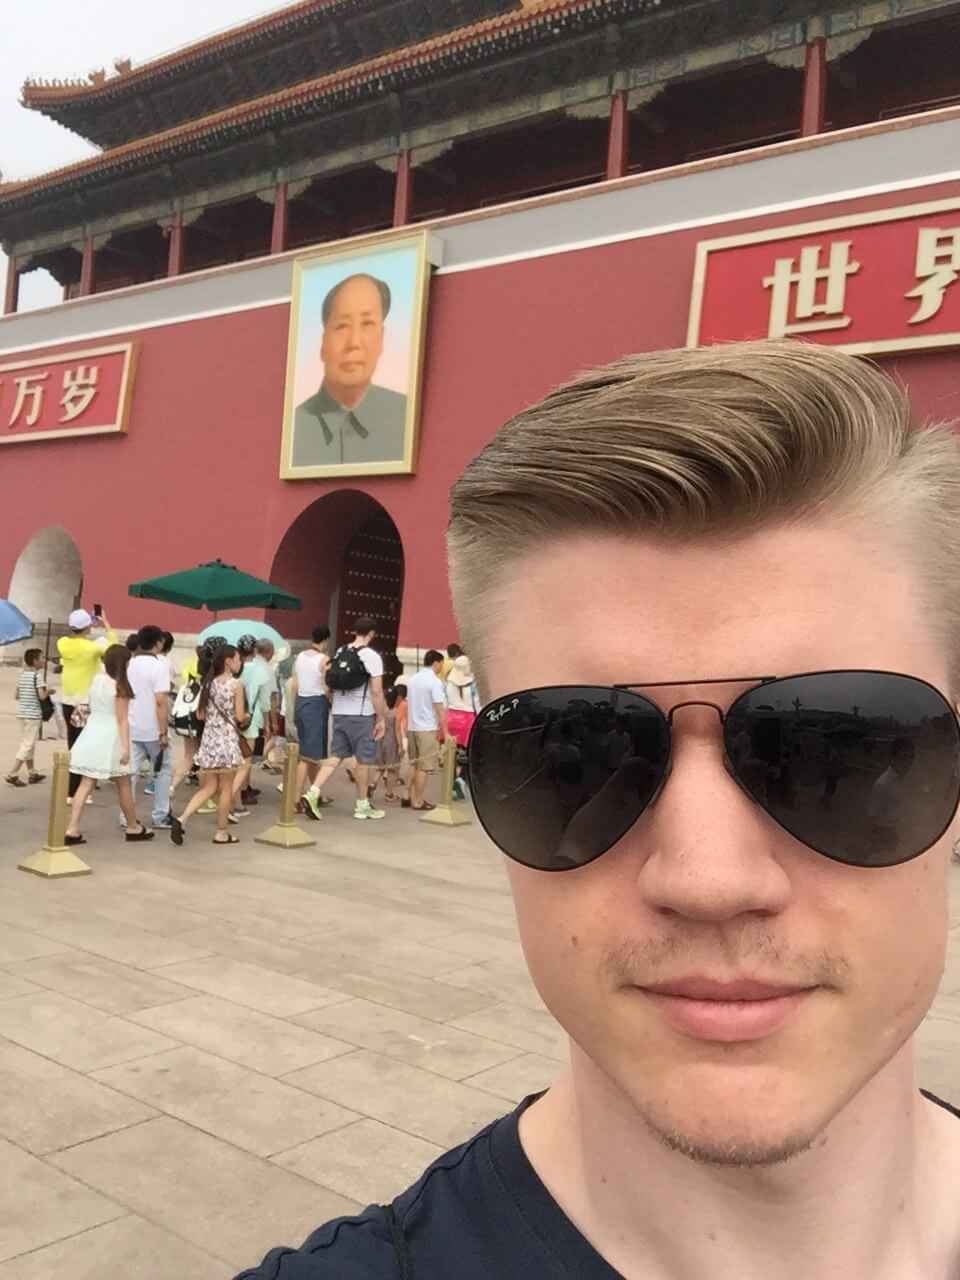 ryan in China